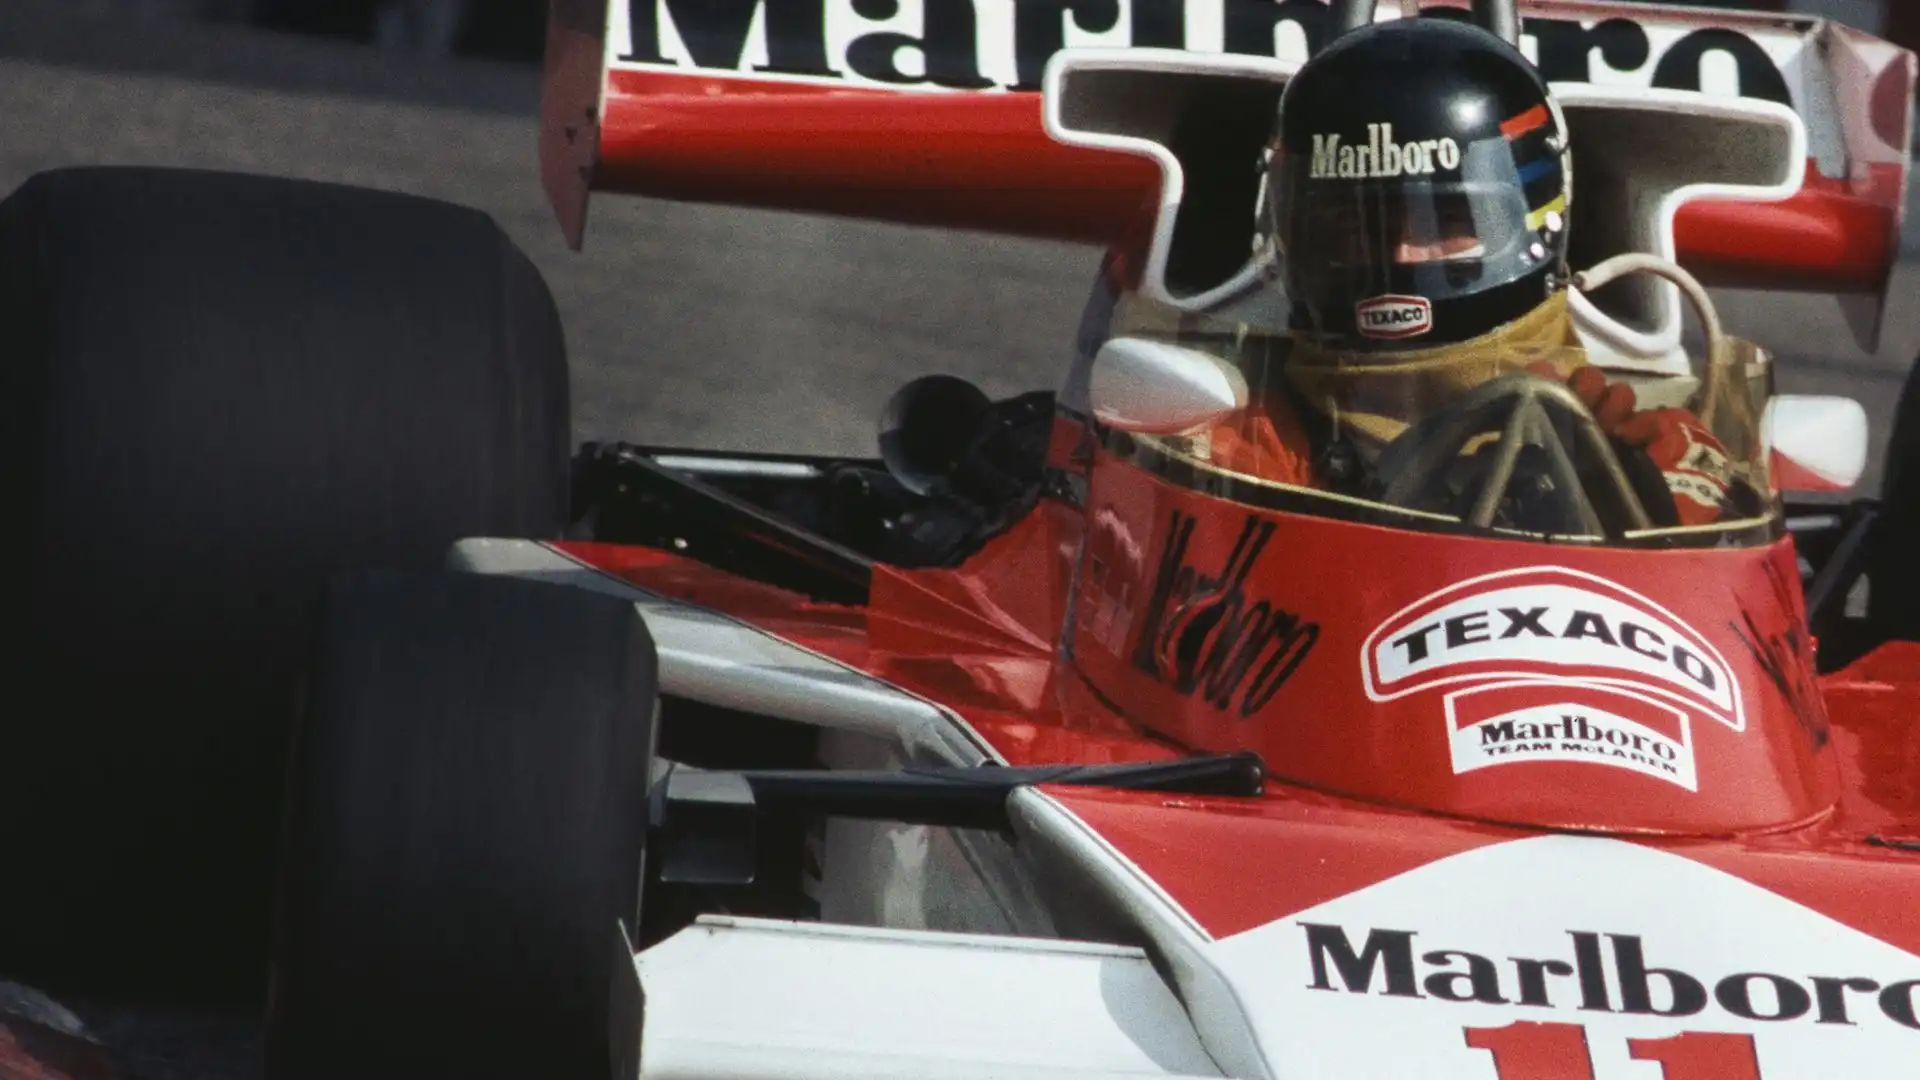 Hunt si era fregiato del titolo di campione del mondo dopo un epico duello con Niki Lauda